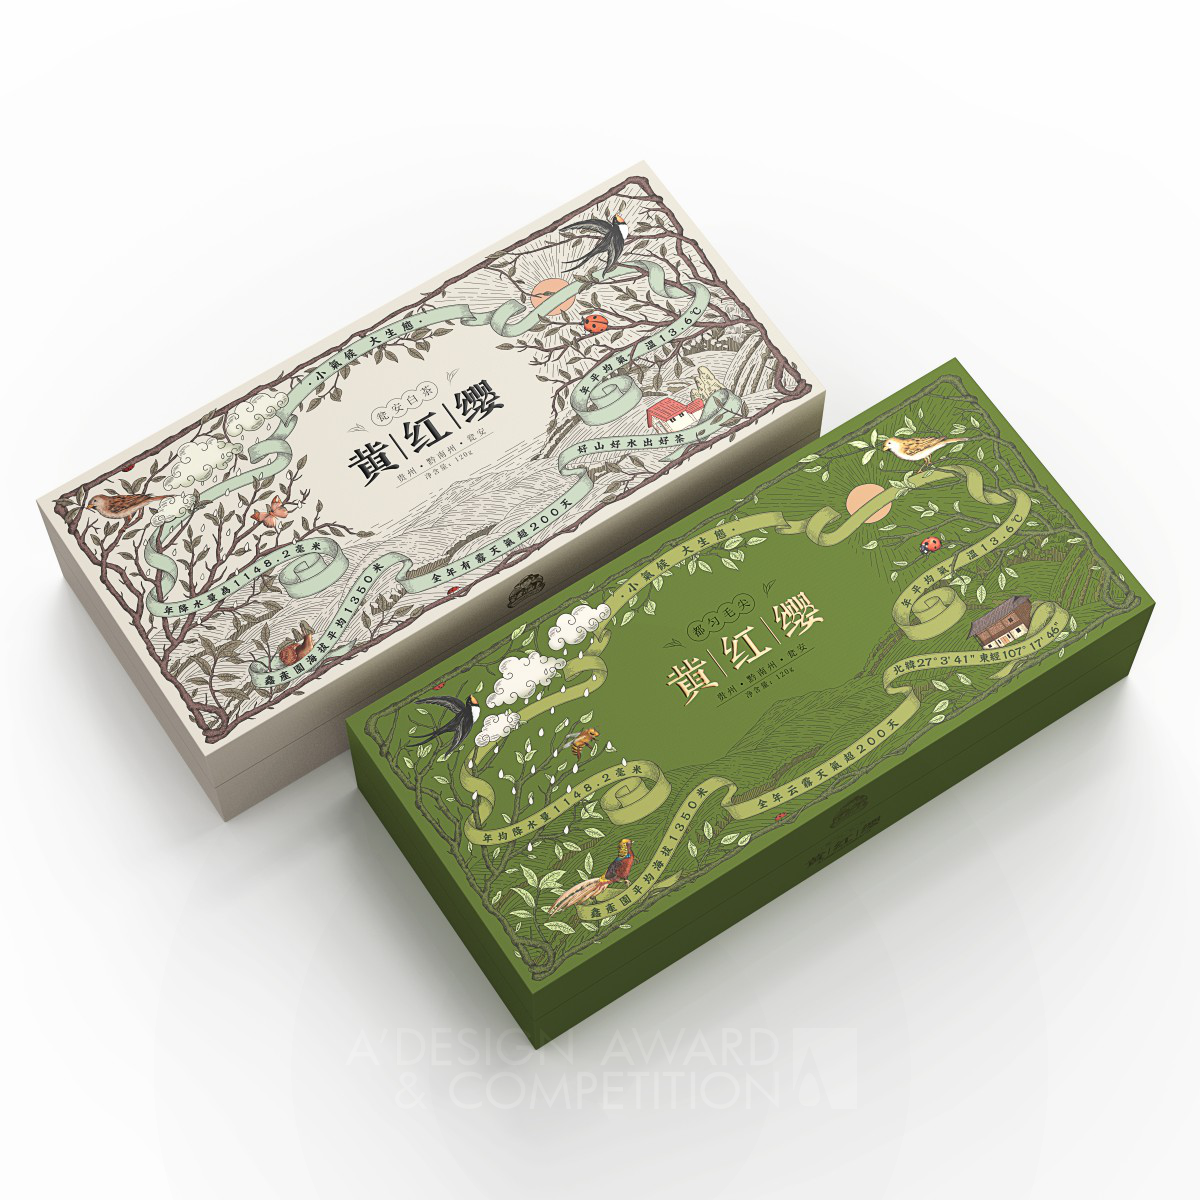 Huanghongying Tea Packaging Design by Wei Dai